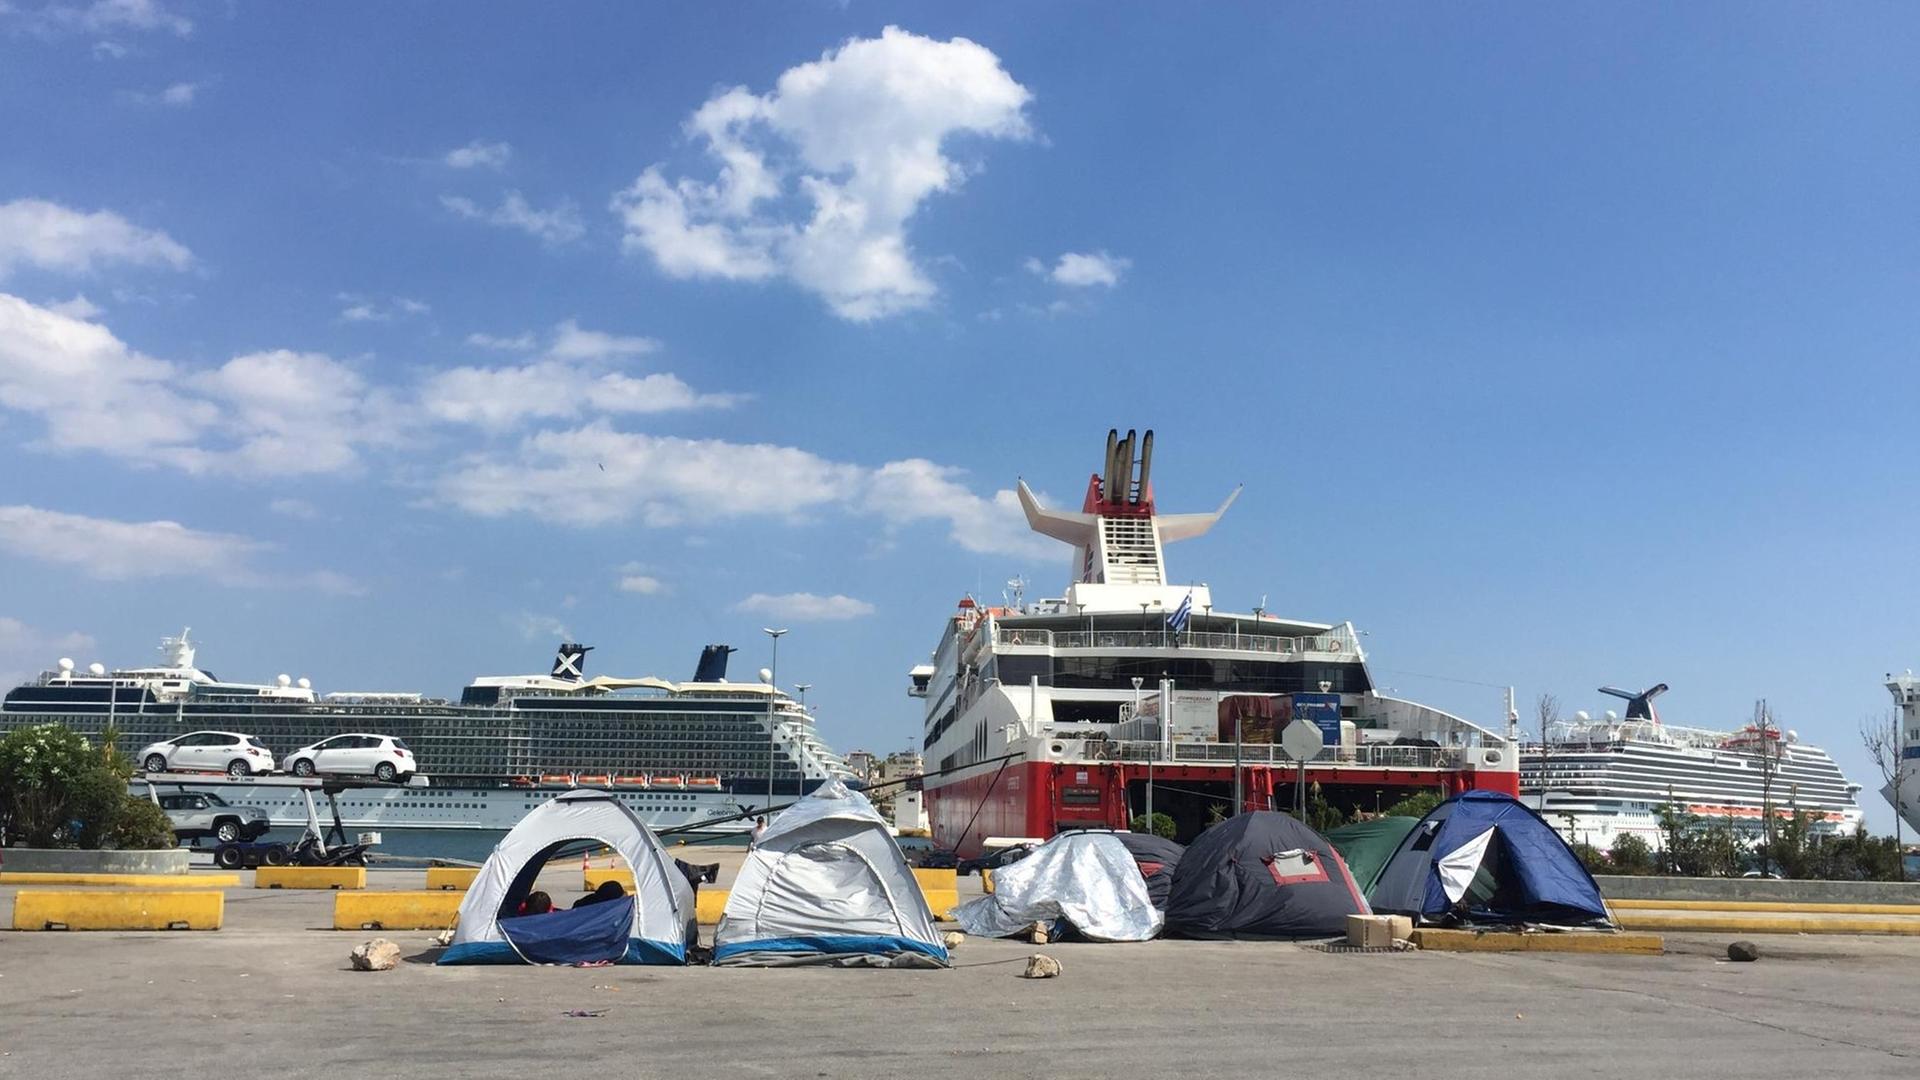 Inoffzielle Flüchtlingsunterkünfte am Hafen von Piräus in Griechenland.